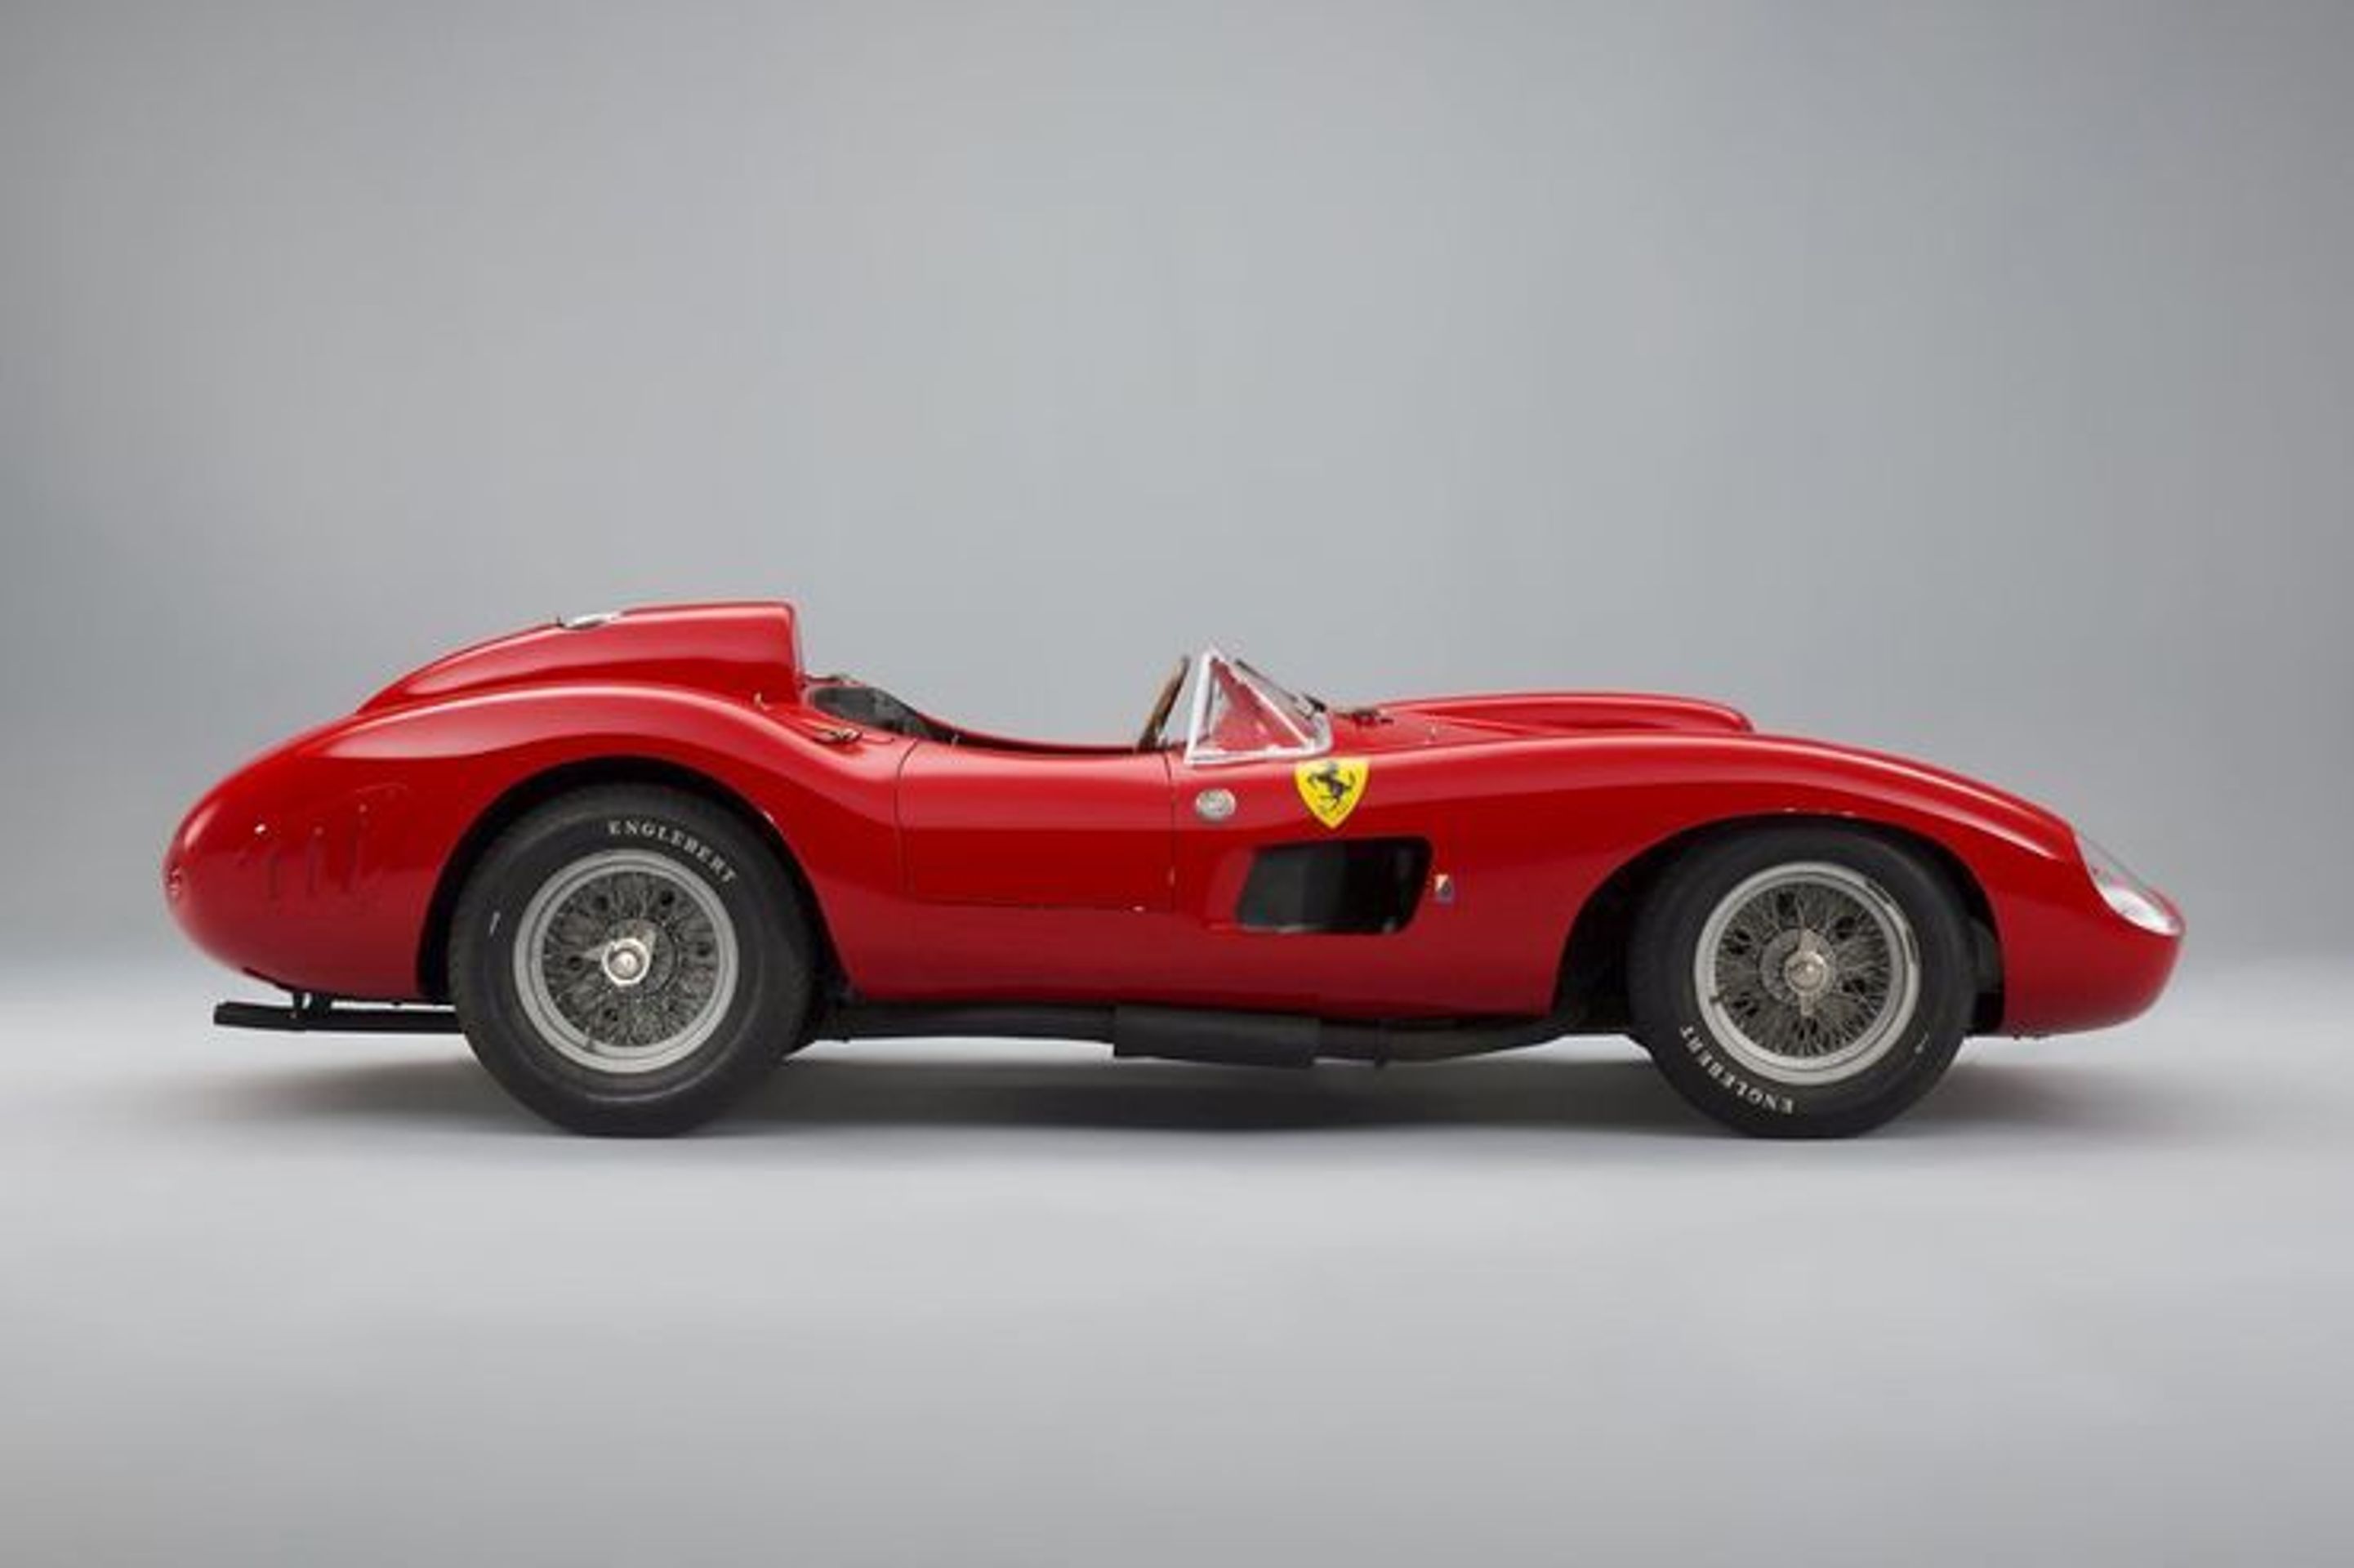 Ferrari 335 S z roku 1957 - Fotogalerie: 10 nejdražších aut historie (9/10)